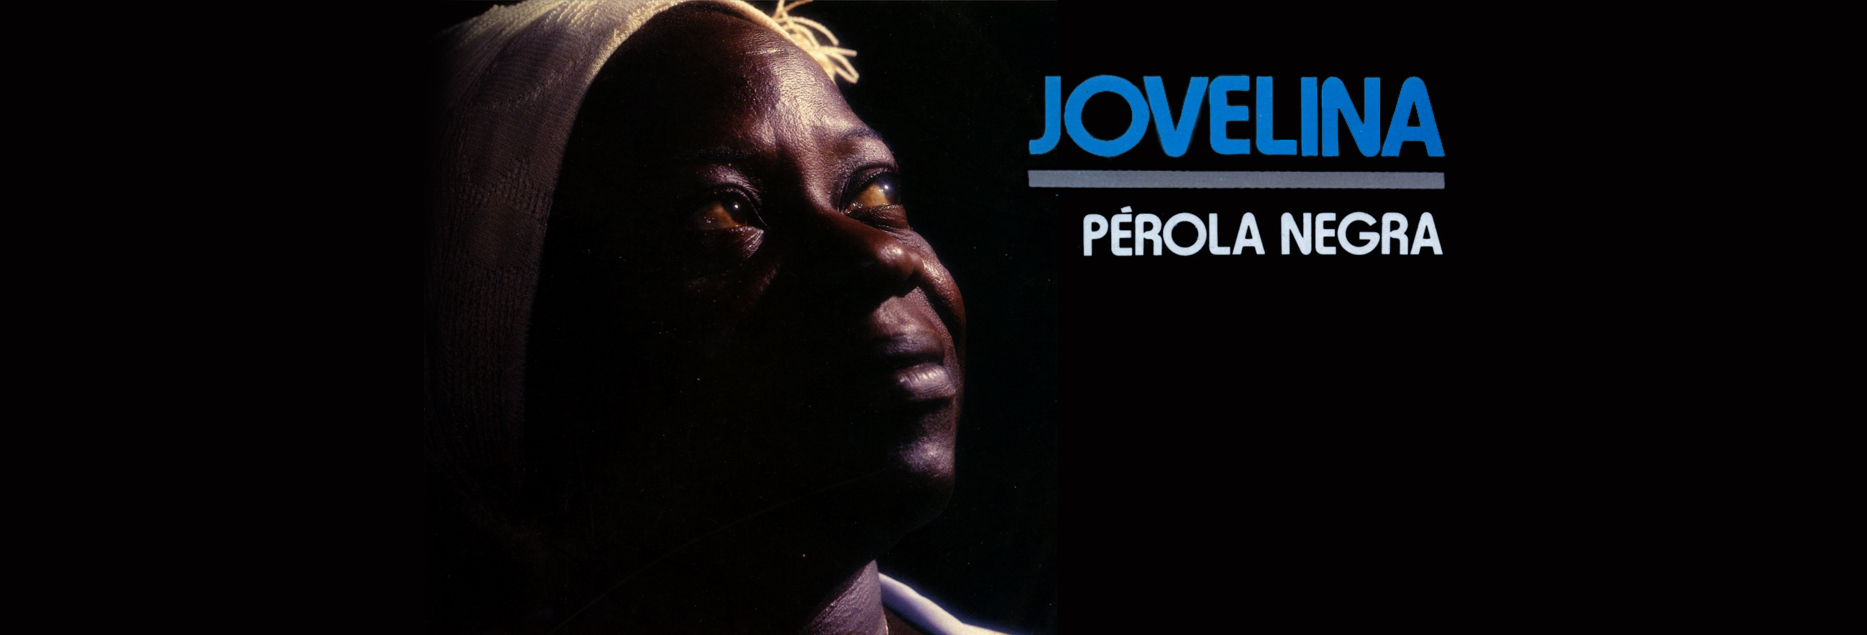 Jovelina, a Pérola Negra do Samba